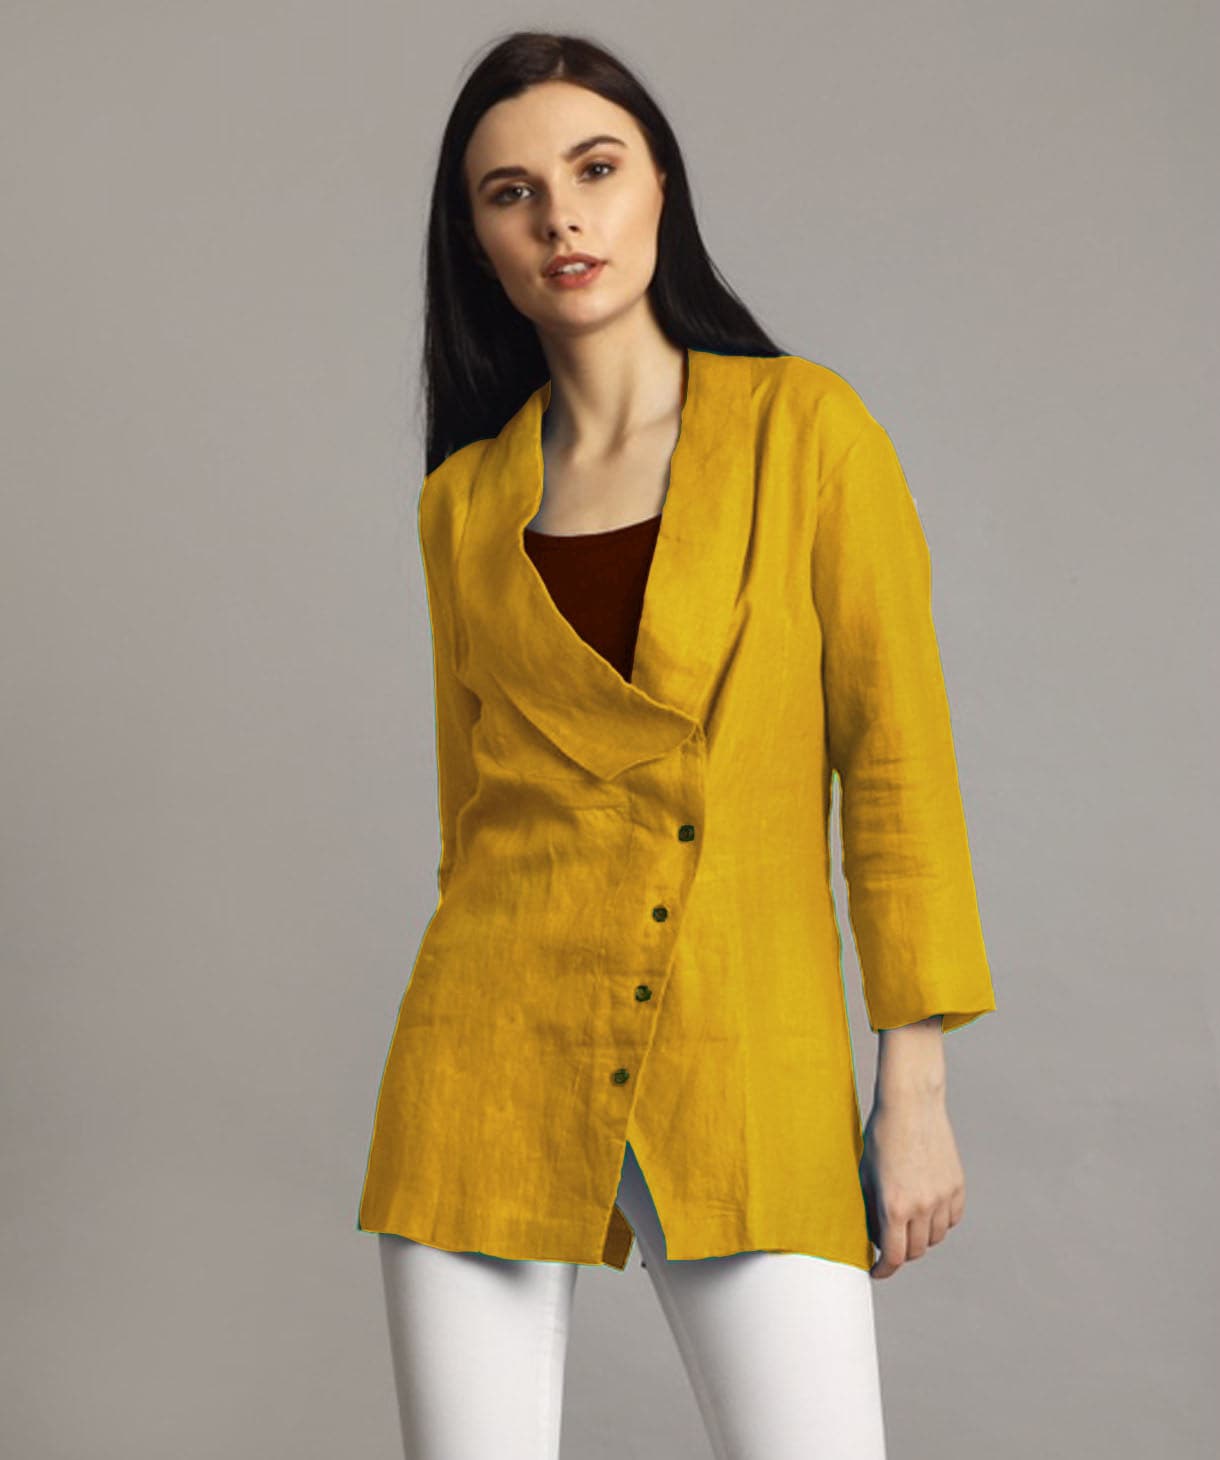 Plus Mustard Linen Jacket Style Tunic - Uptownie